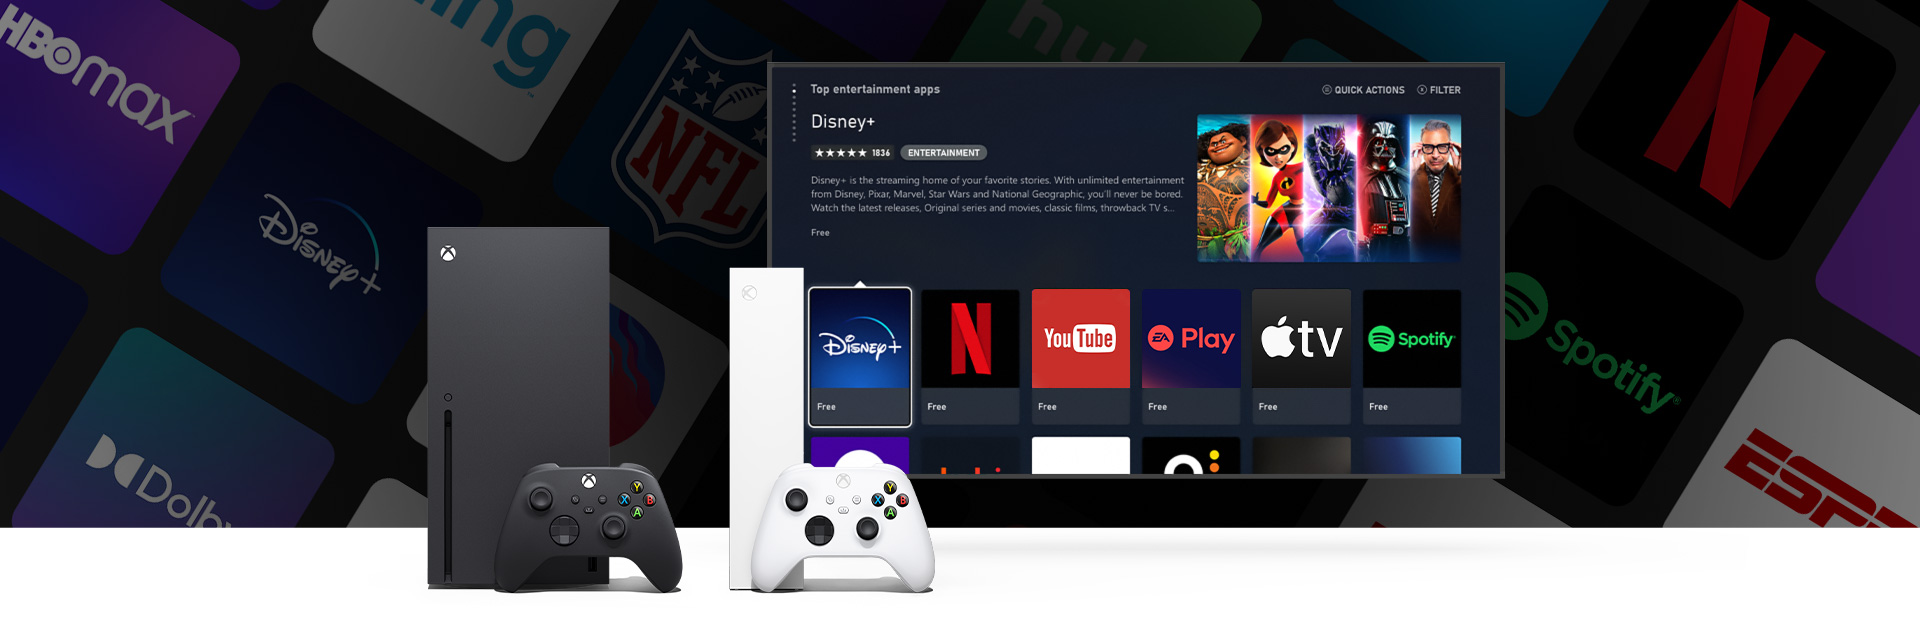 Dolby Vision dans l’application Apple TV et les podcasts vidéo de Spotify arrivent sur Xbox